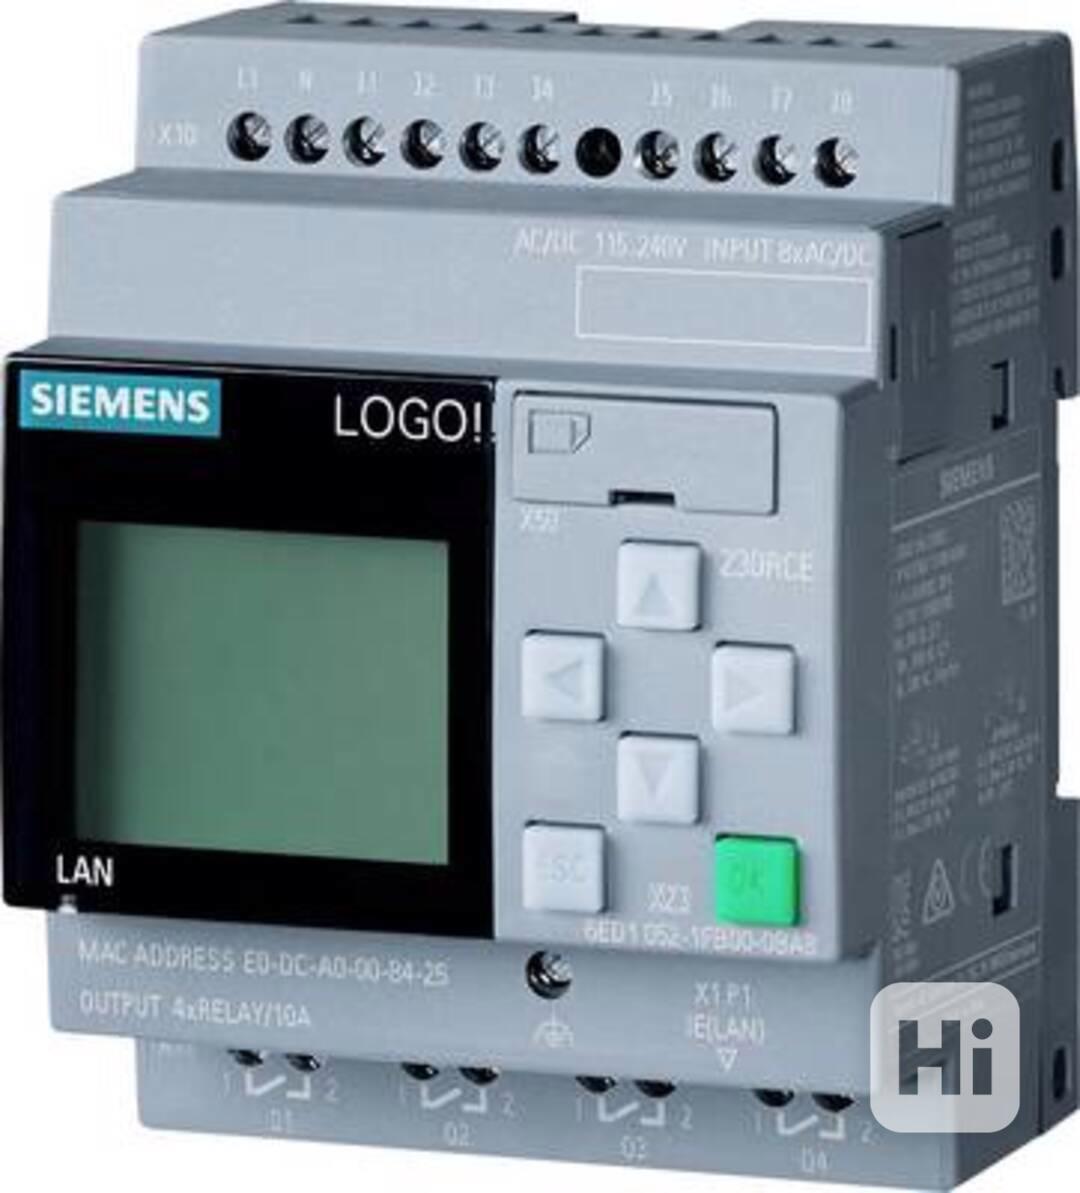 Siemens LOGO! 8 - foto 1